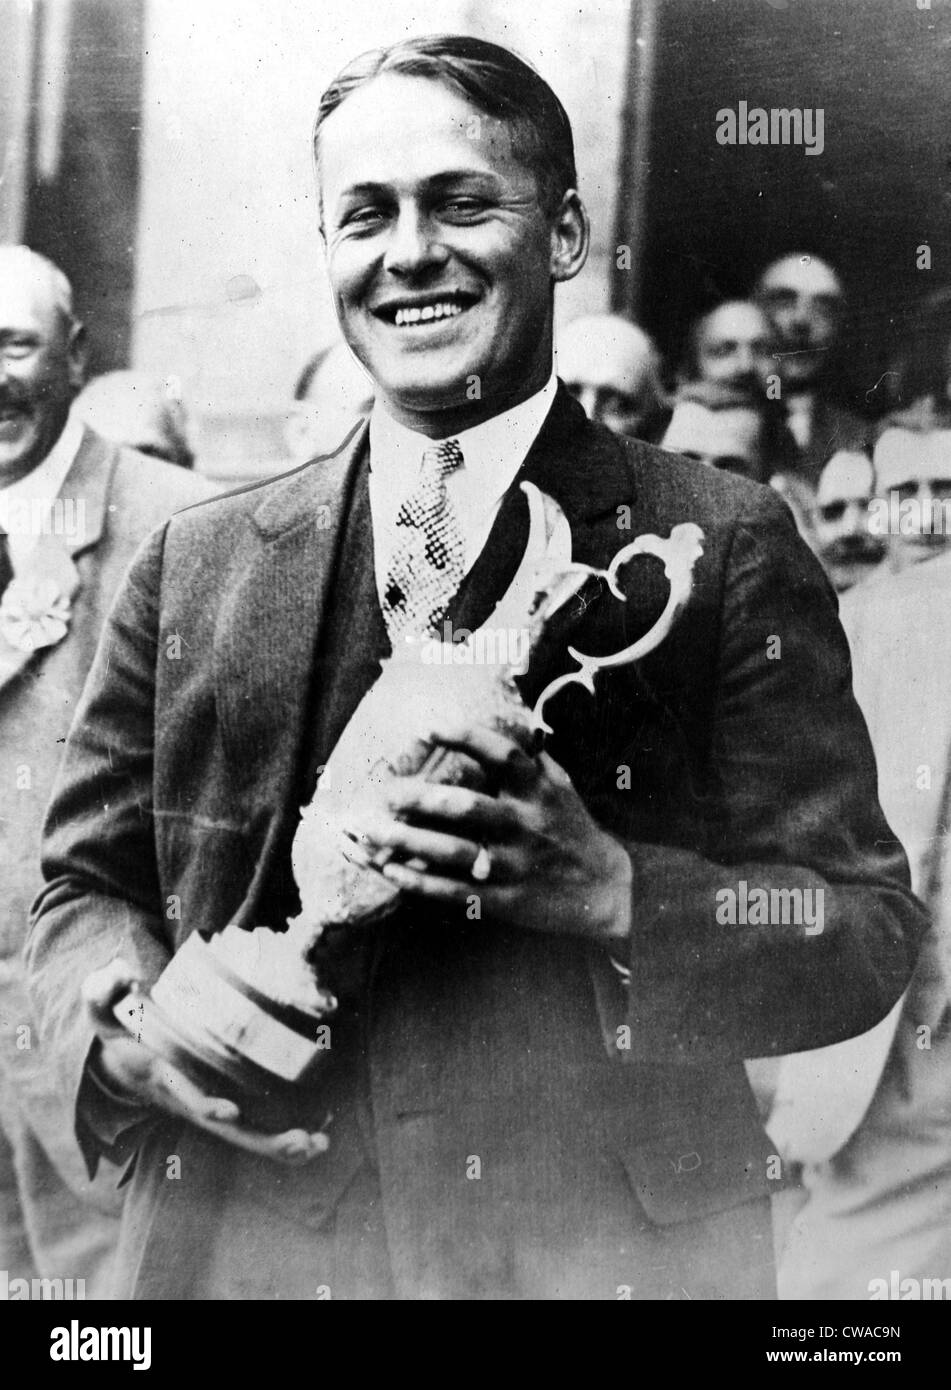 Bobby Jones avec son championshuip cup après avoir remporté le British Open, Saint Andrew's, Ecosse, juillet 1927. Avec la permission de : CSU Banque D'Images